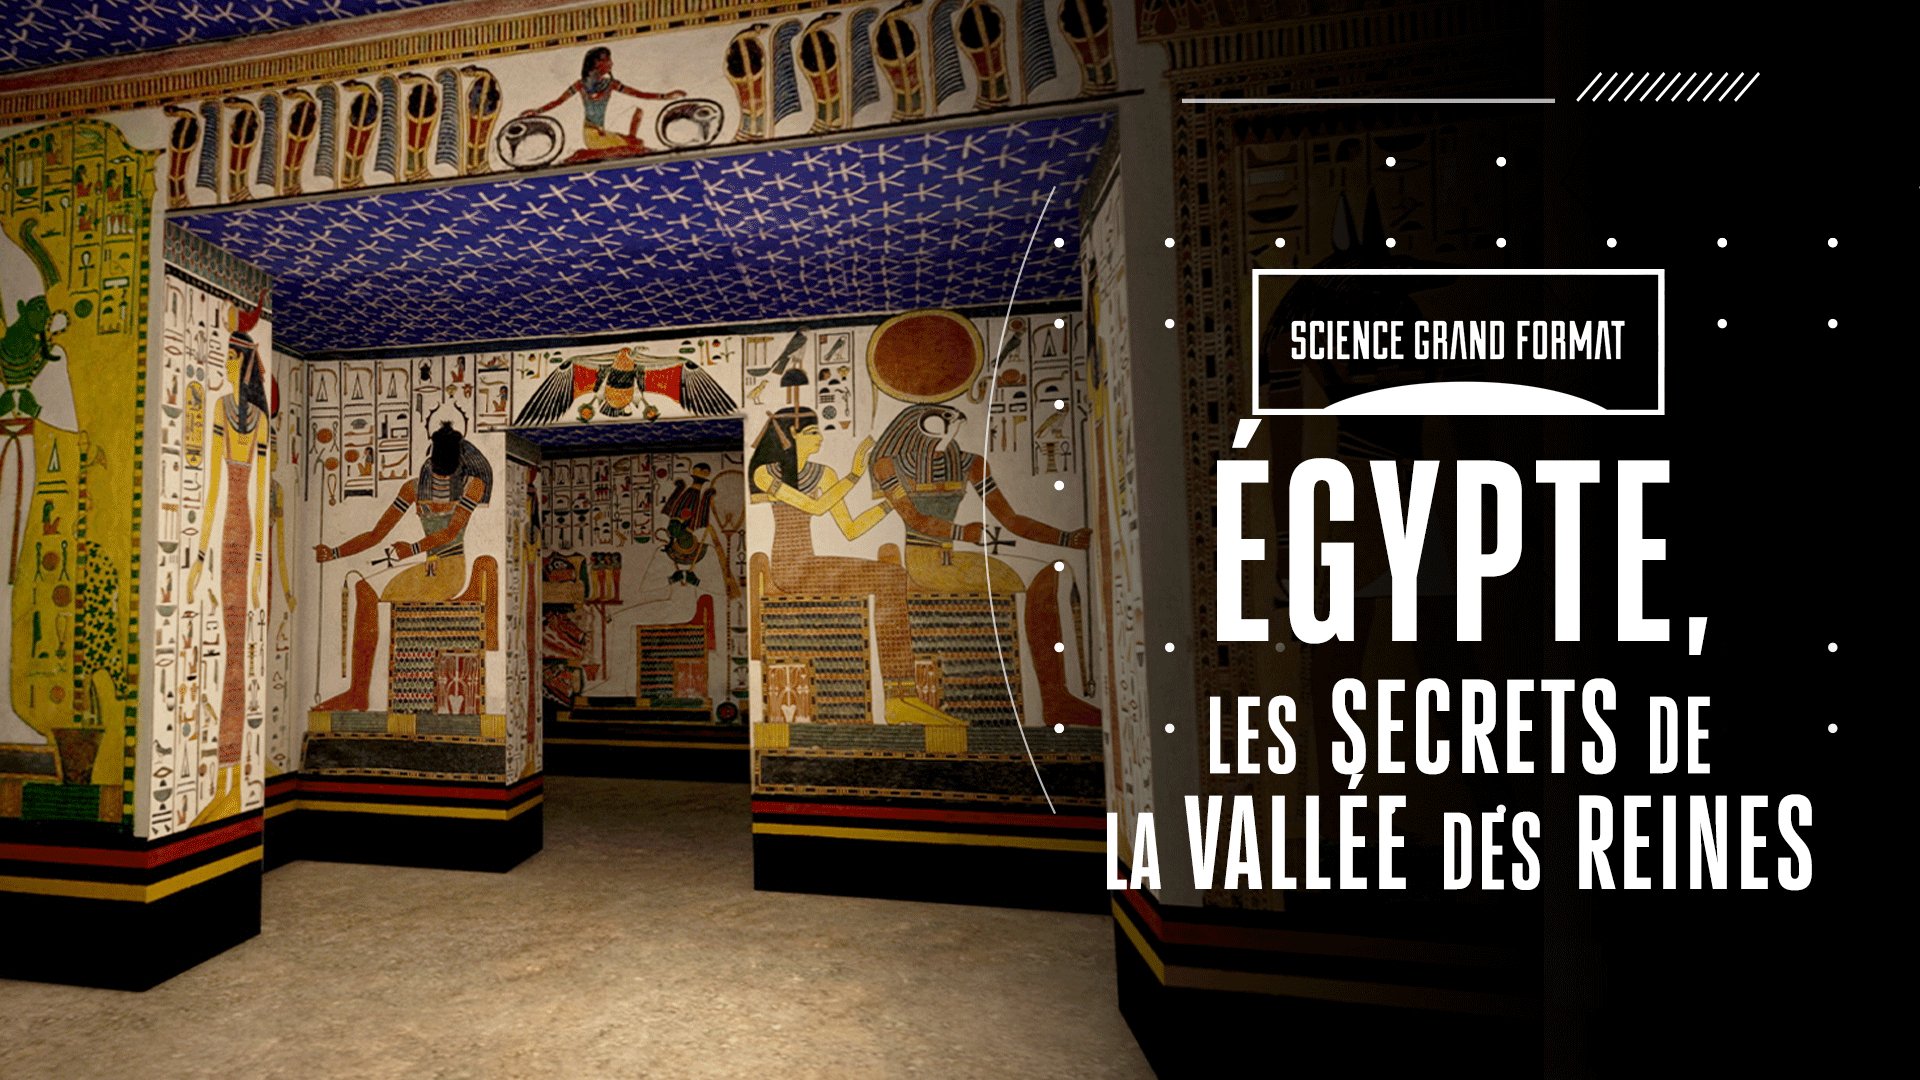 Egypte, les secrets de la vallée des reines